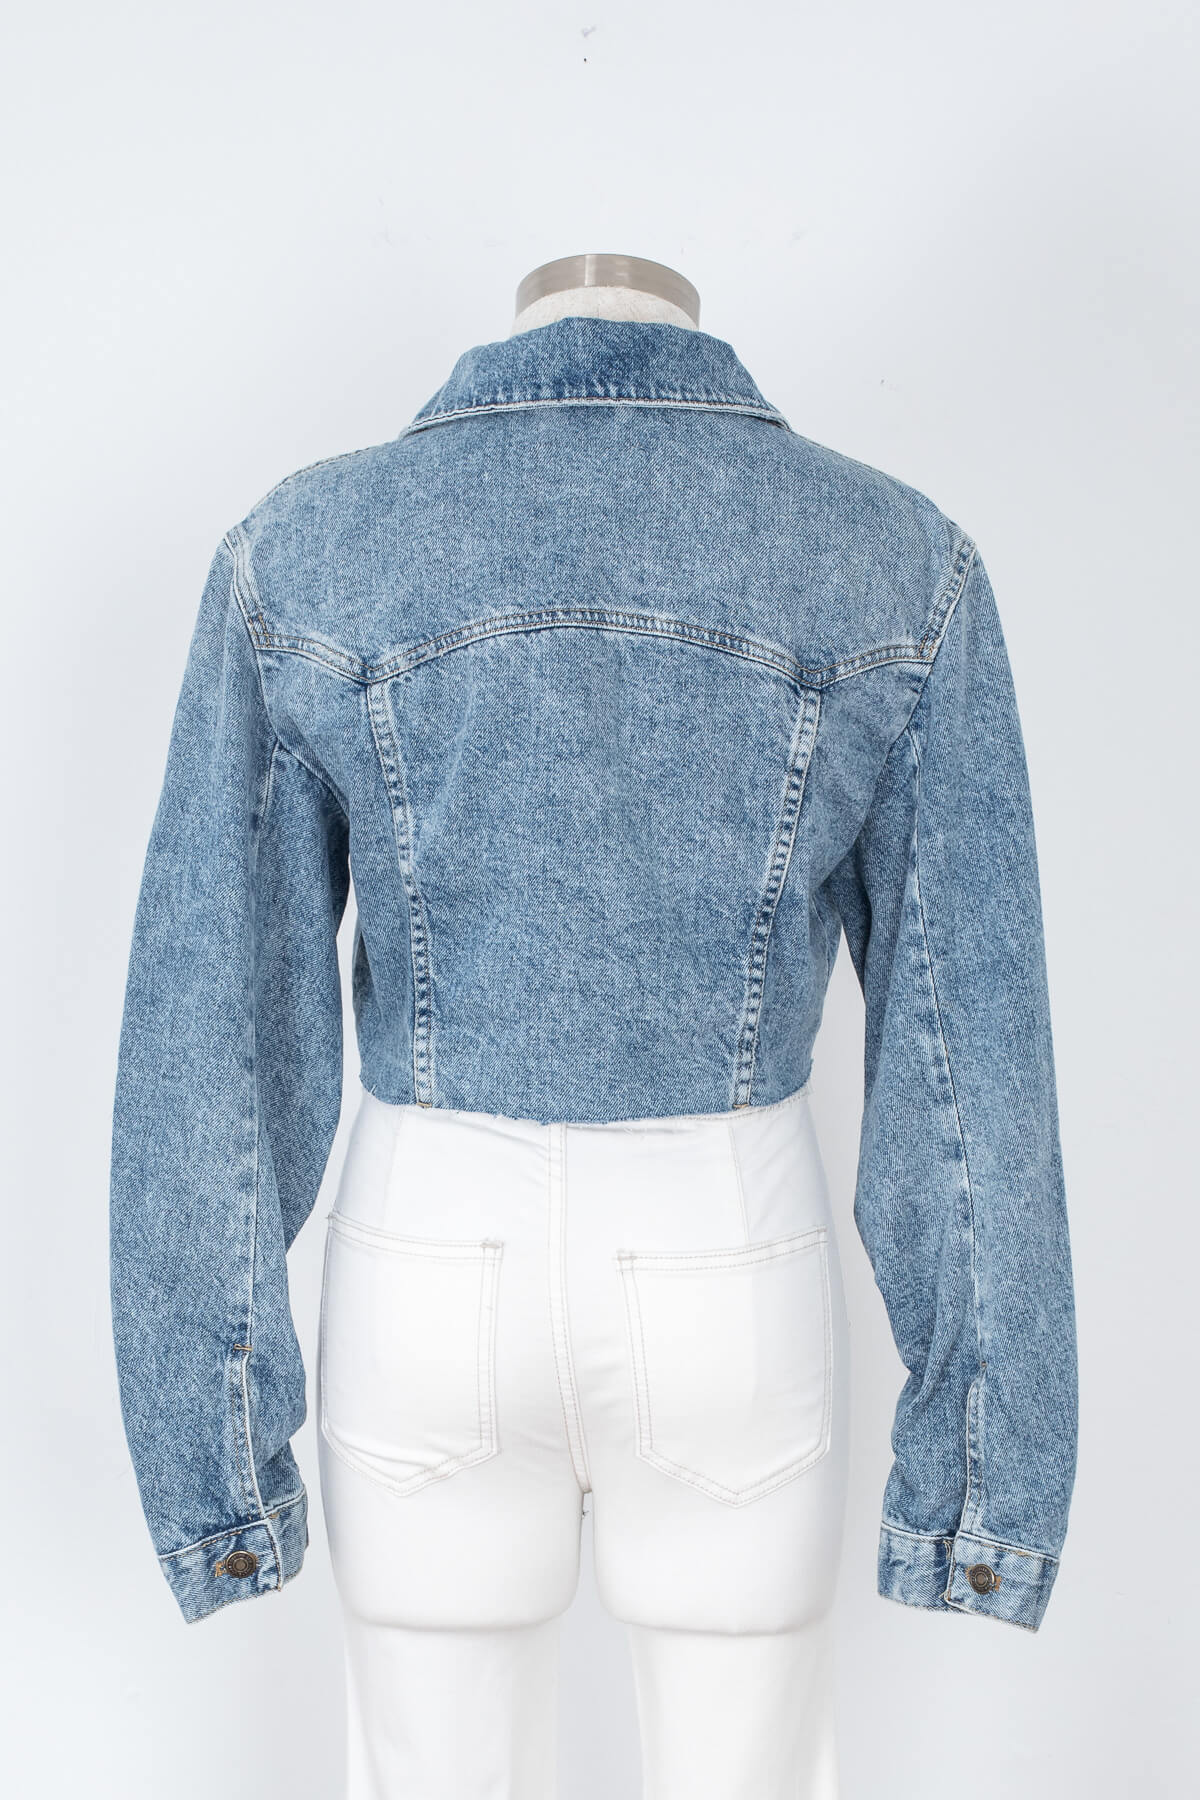 Women's light blue jean jacket | Kariella